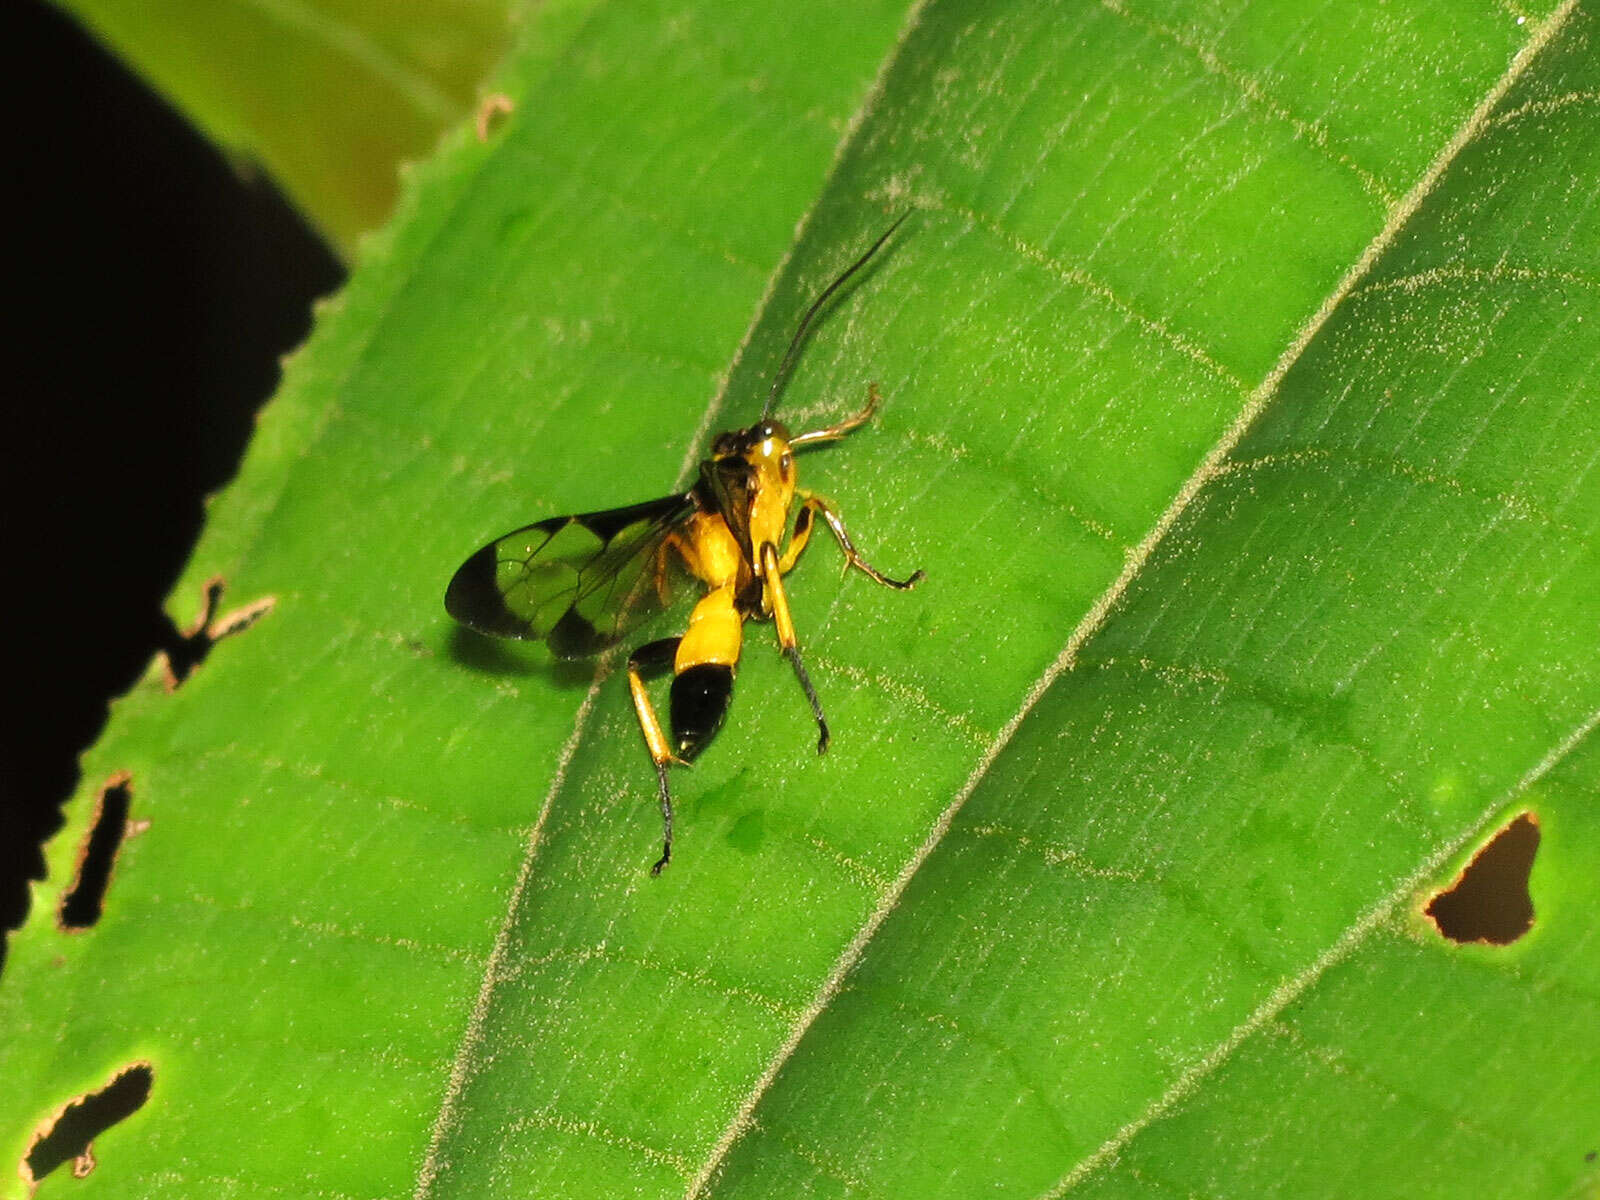 Image of ichneumon wasps